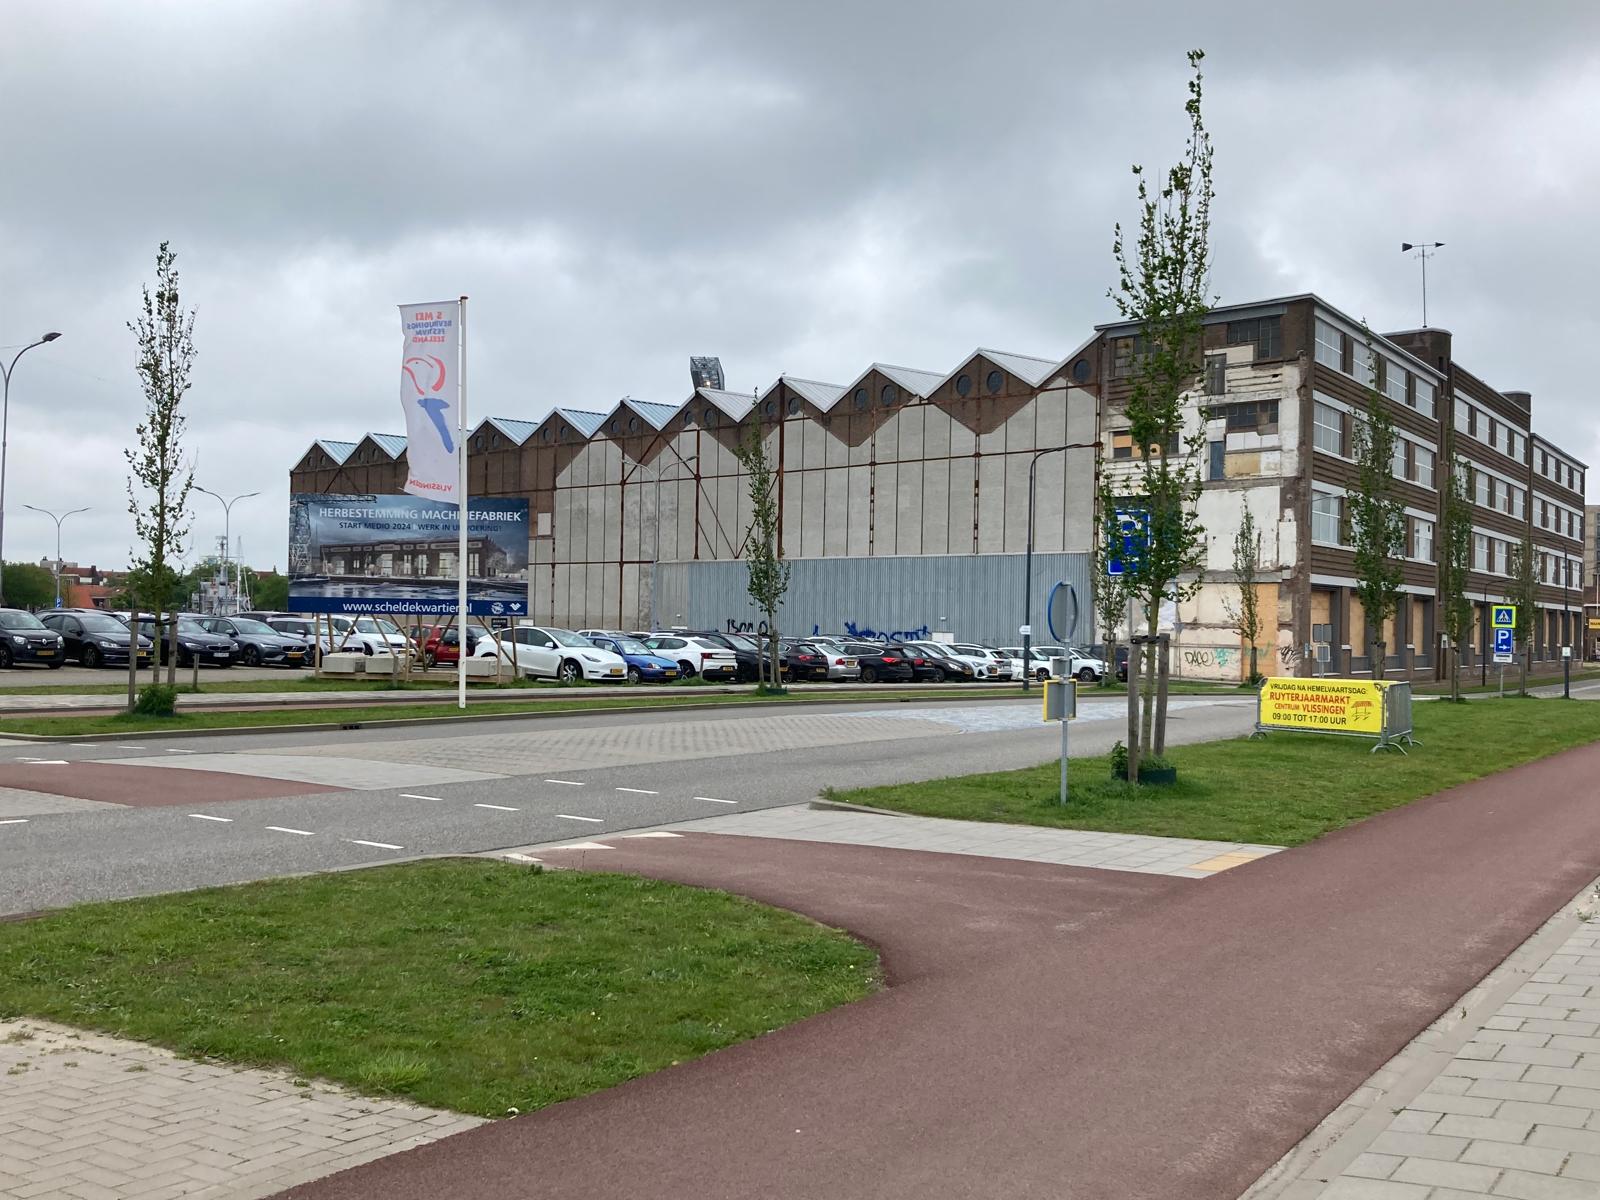 Parkeren duurder in Vlissingen om parkeergarage in Machinefabriek te bekostigen